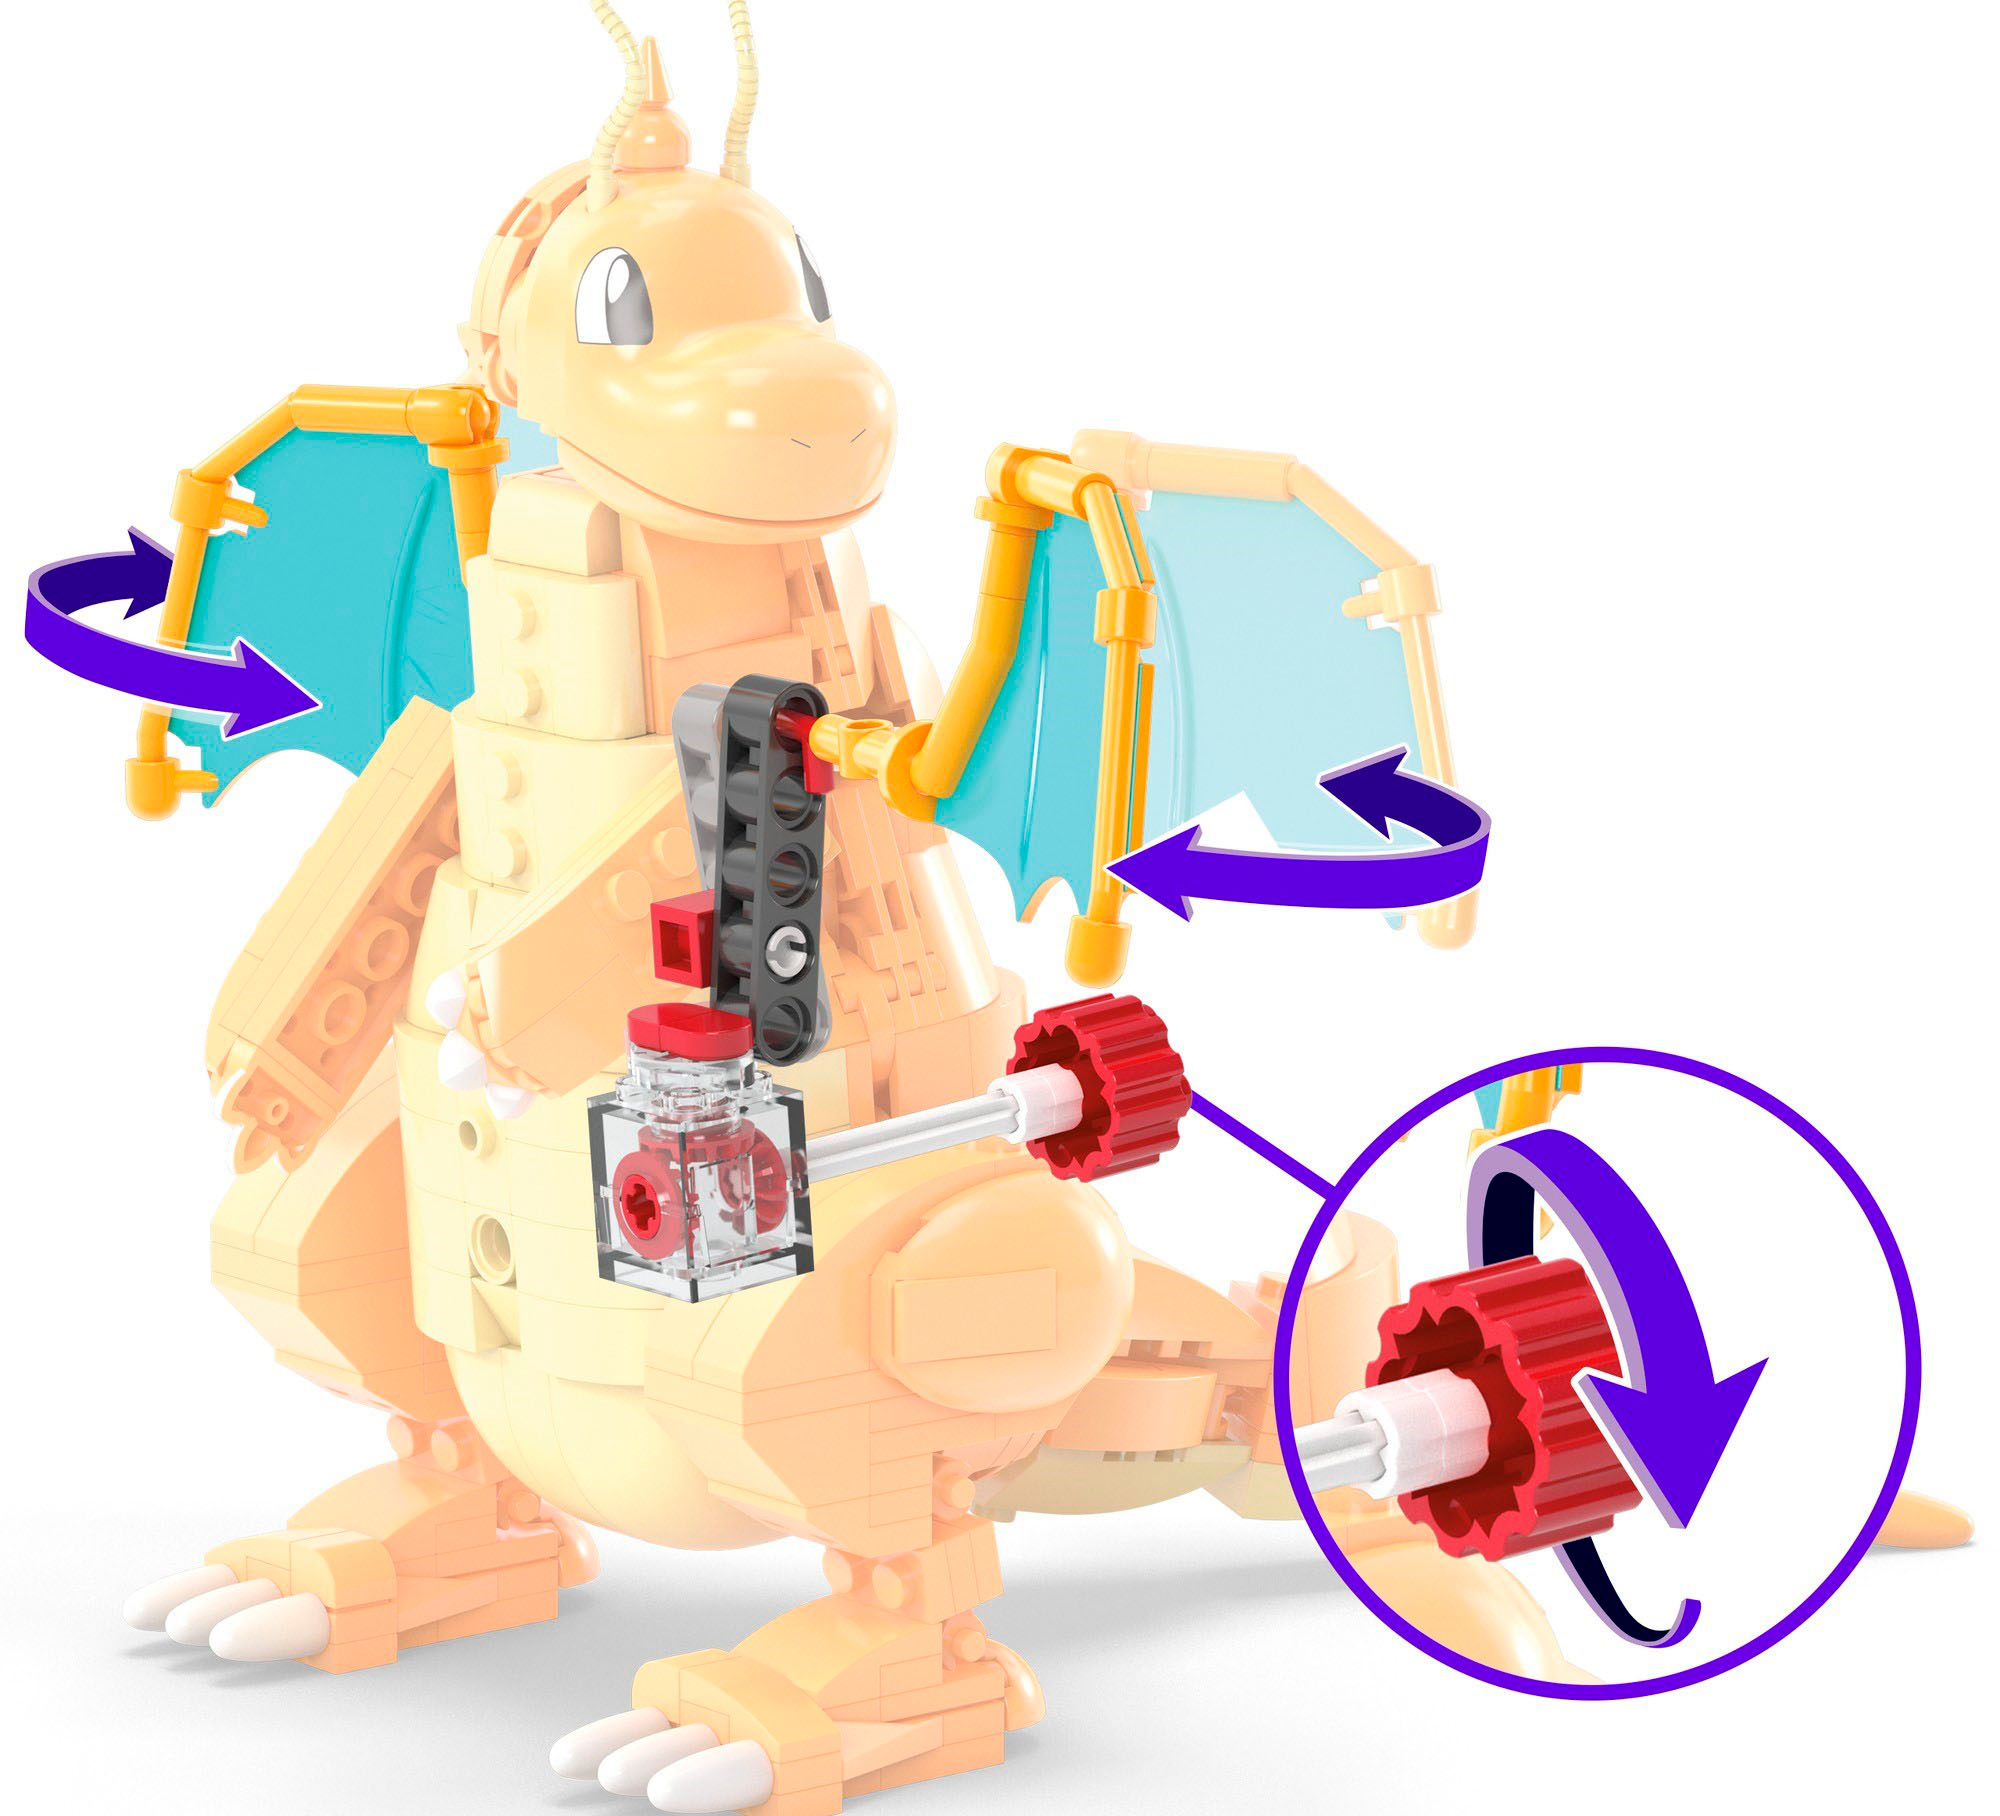 Pokemon Dragonite Mega Bloks Construx Build With Motion Set HKT25 387 pcs